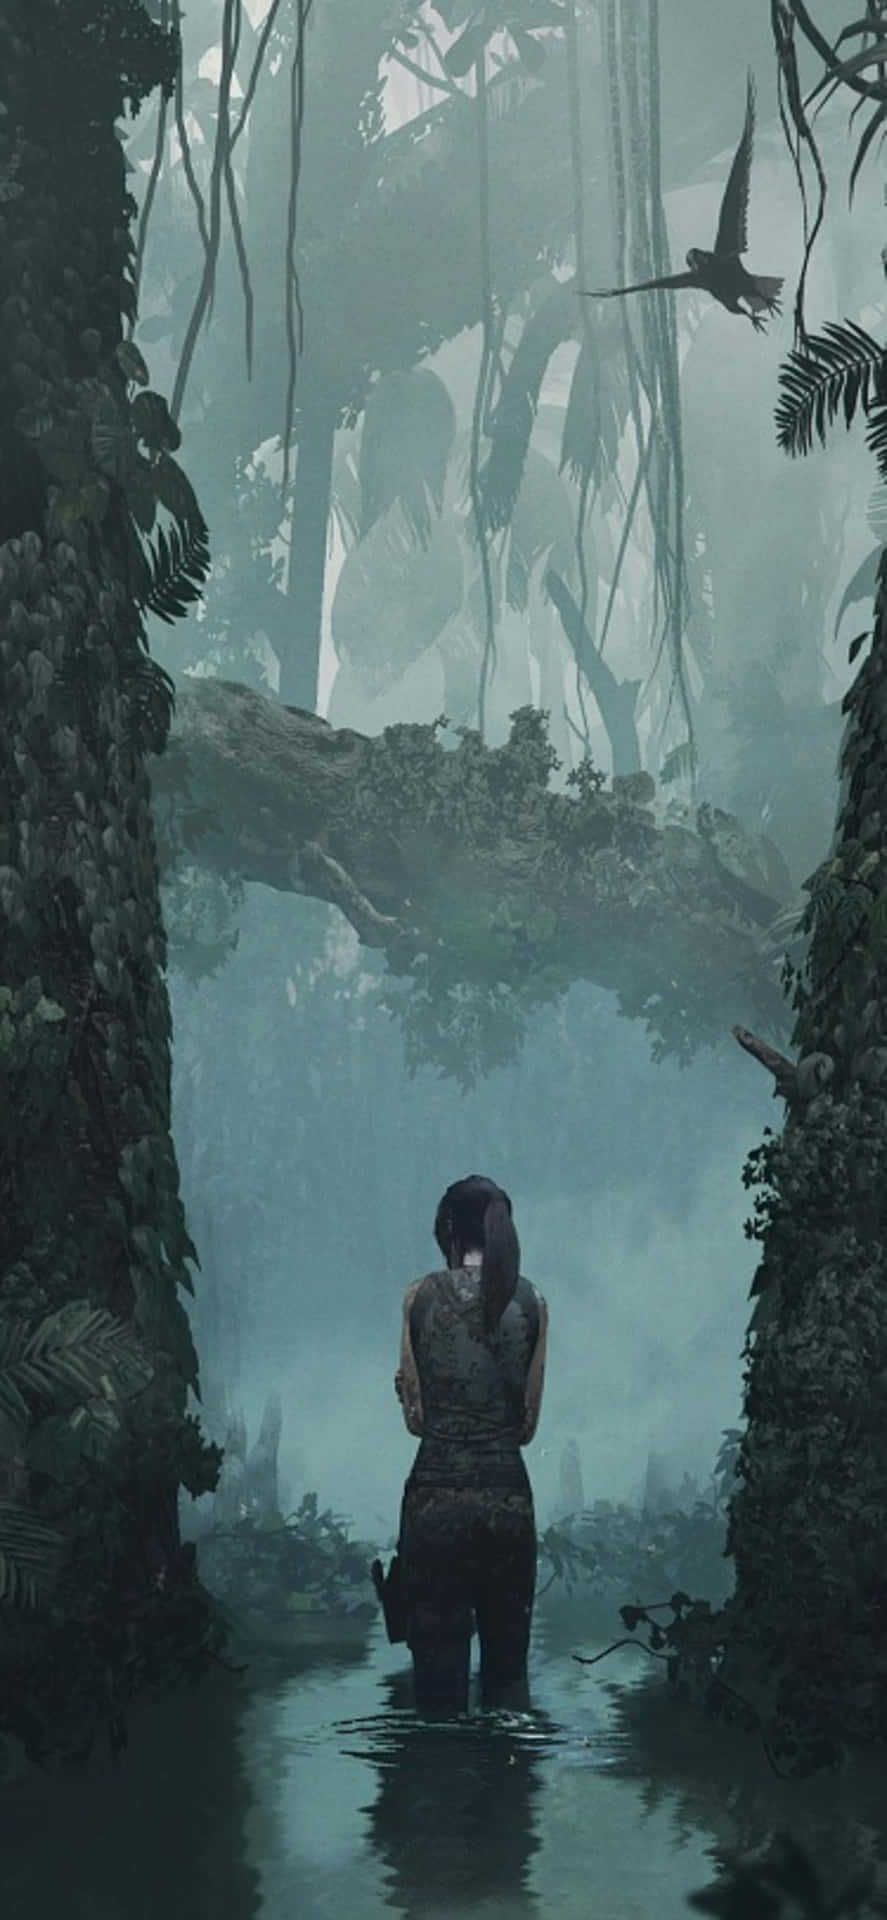 Incrívelvista Da Jornada De Lara Croft Em Shadow Of The Tomb Raider Para Iphone X.